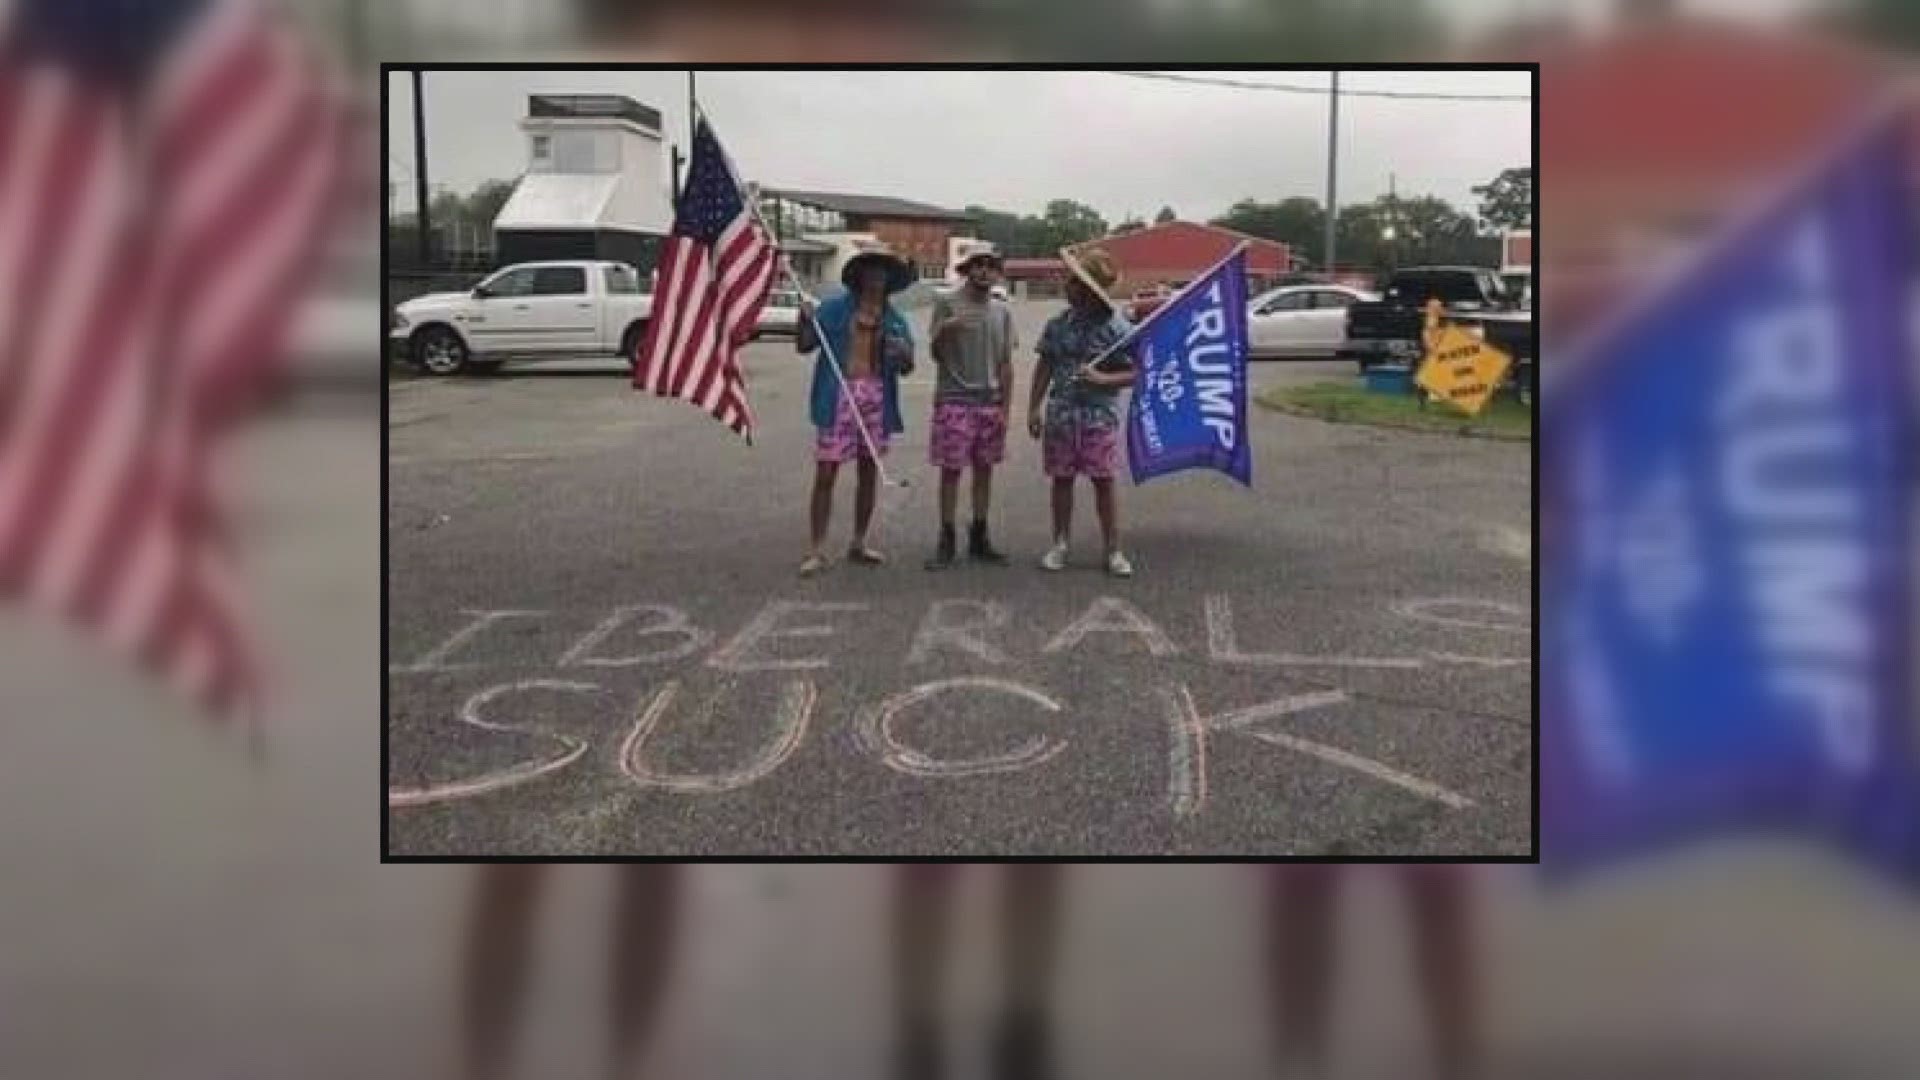 Belle Chasse High 'senior prank' involving Trump flag, slam on